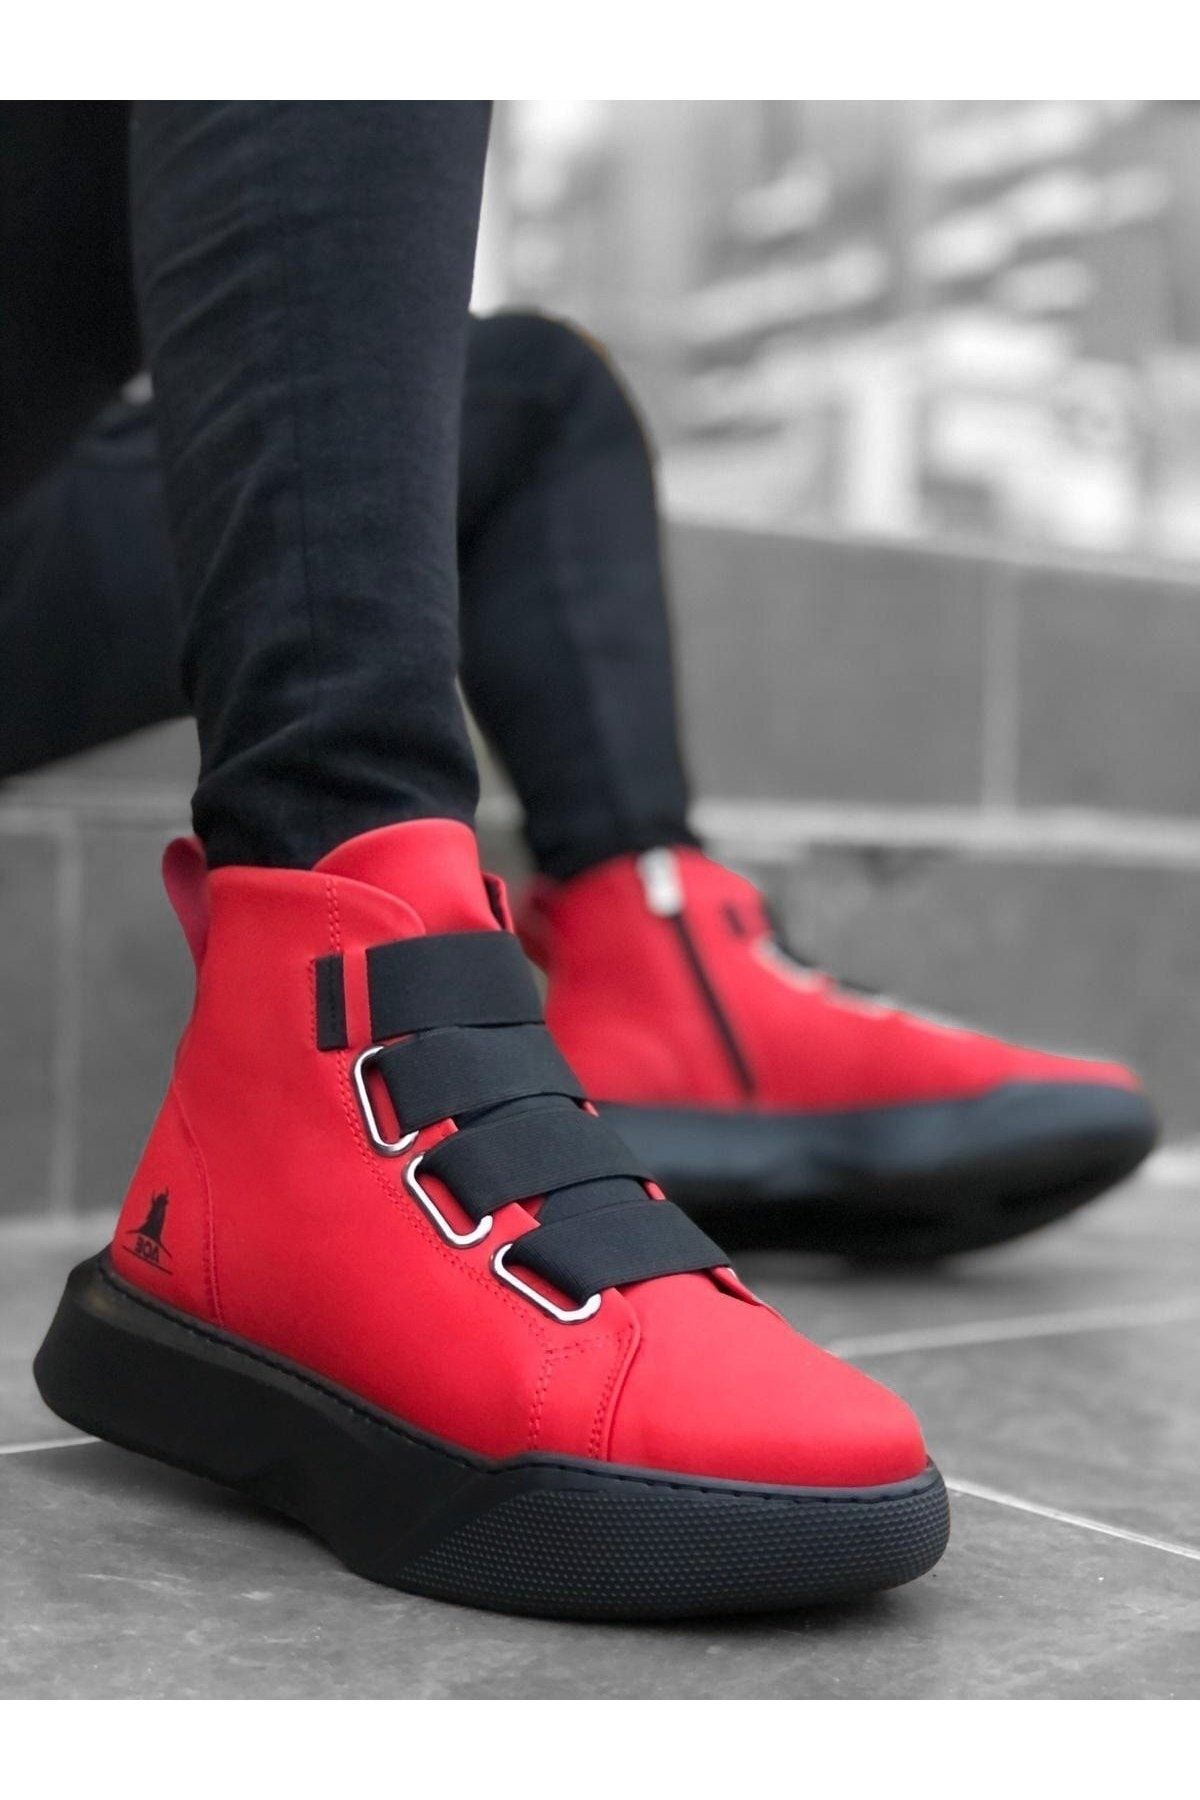 BOUIS Erkek Kırmızı Spor Dayanıklı Suni Deri Bot Koku Yapmaz Terletmez Kalın Taban Postal Ayakkabı